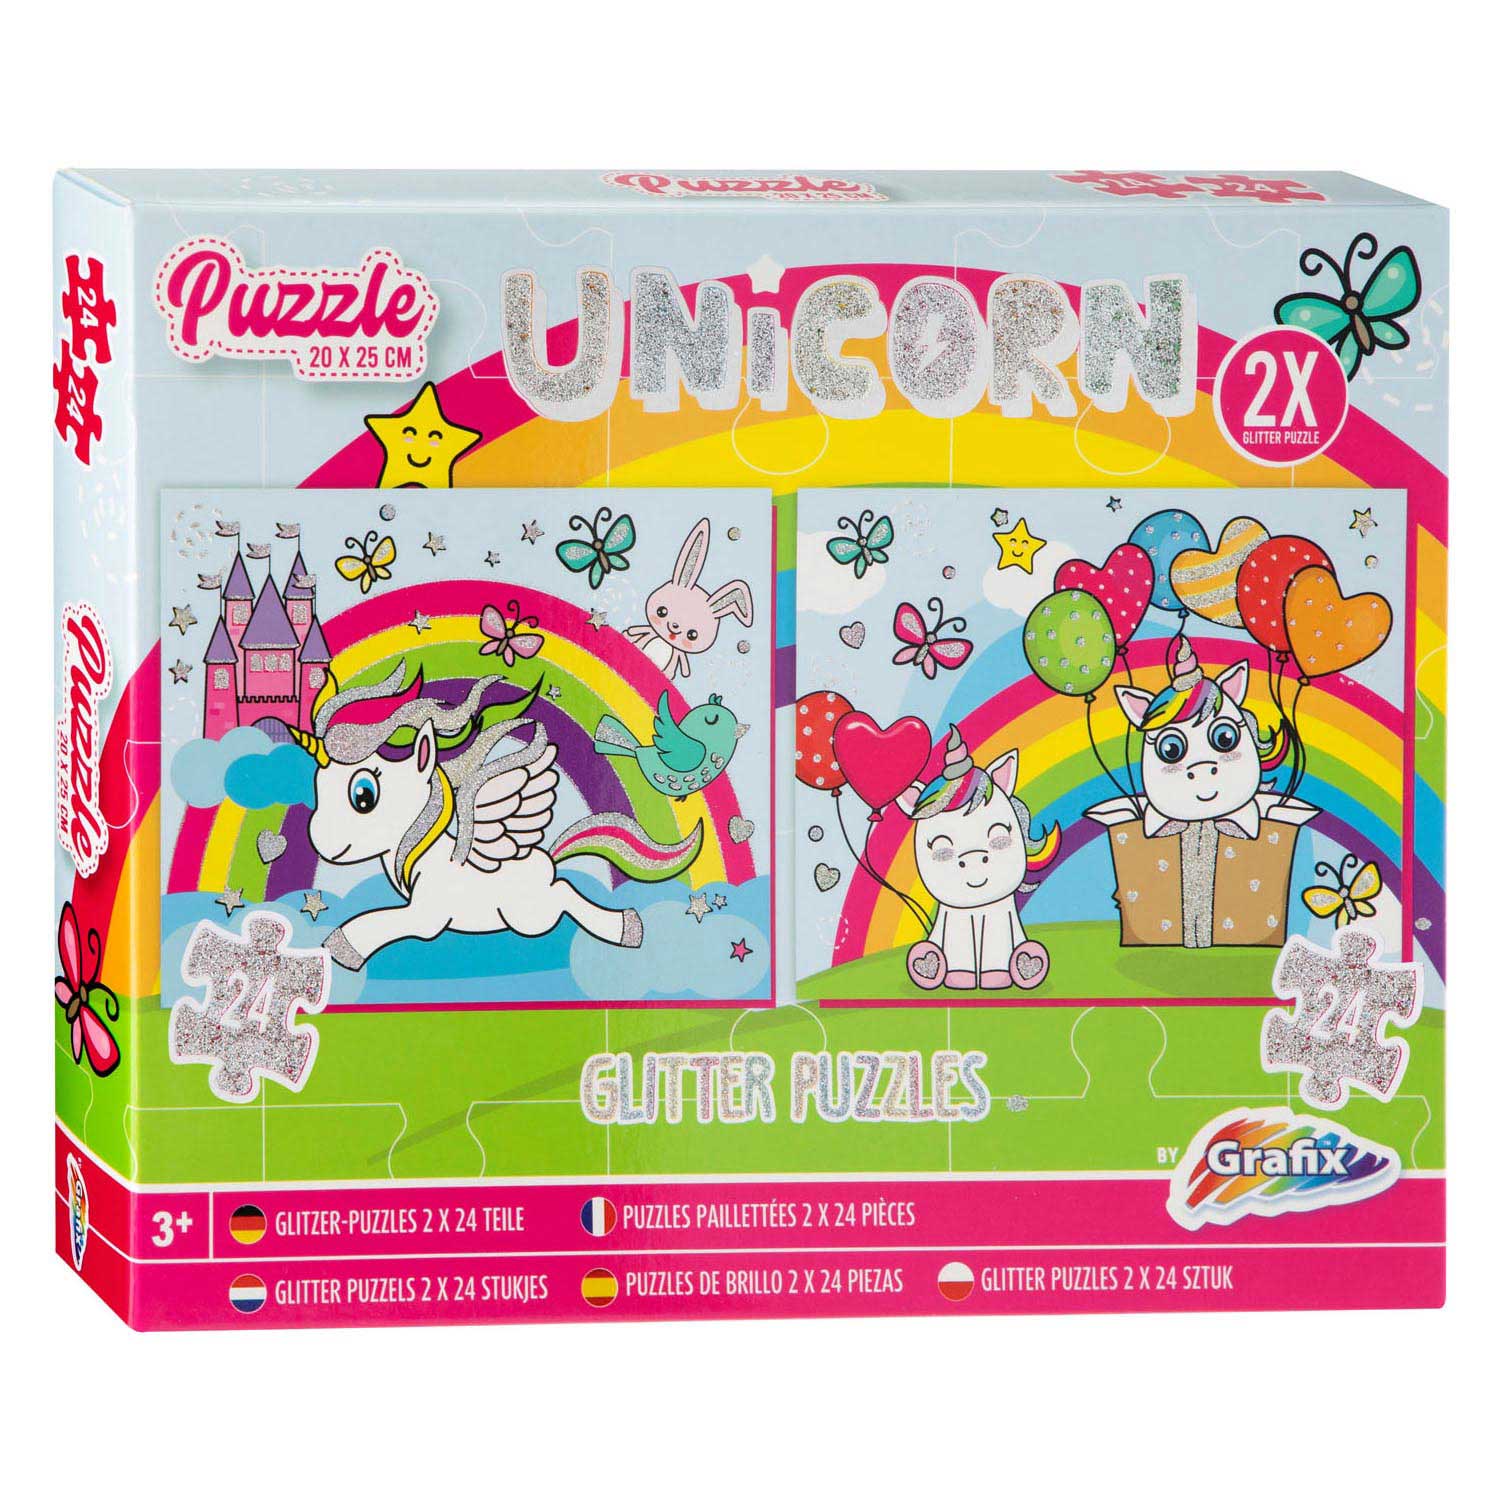 Premier Puzzle Shimmer-Cats Cradle Shimmer